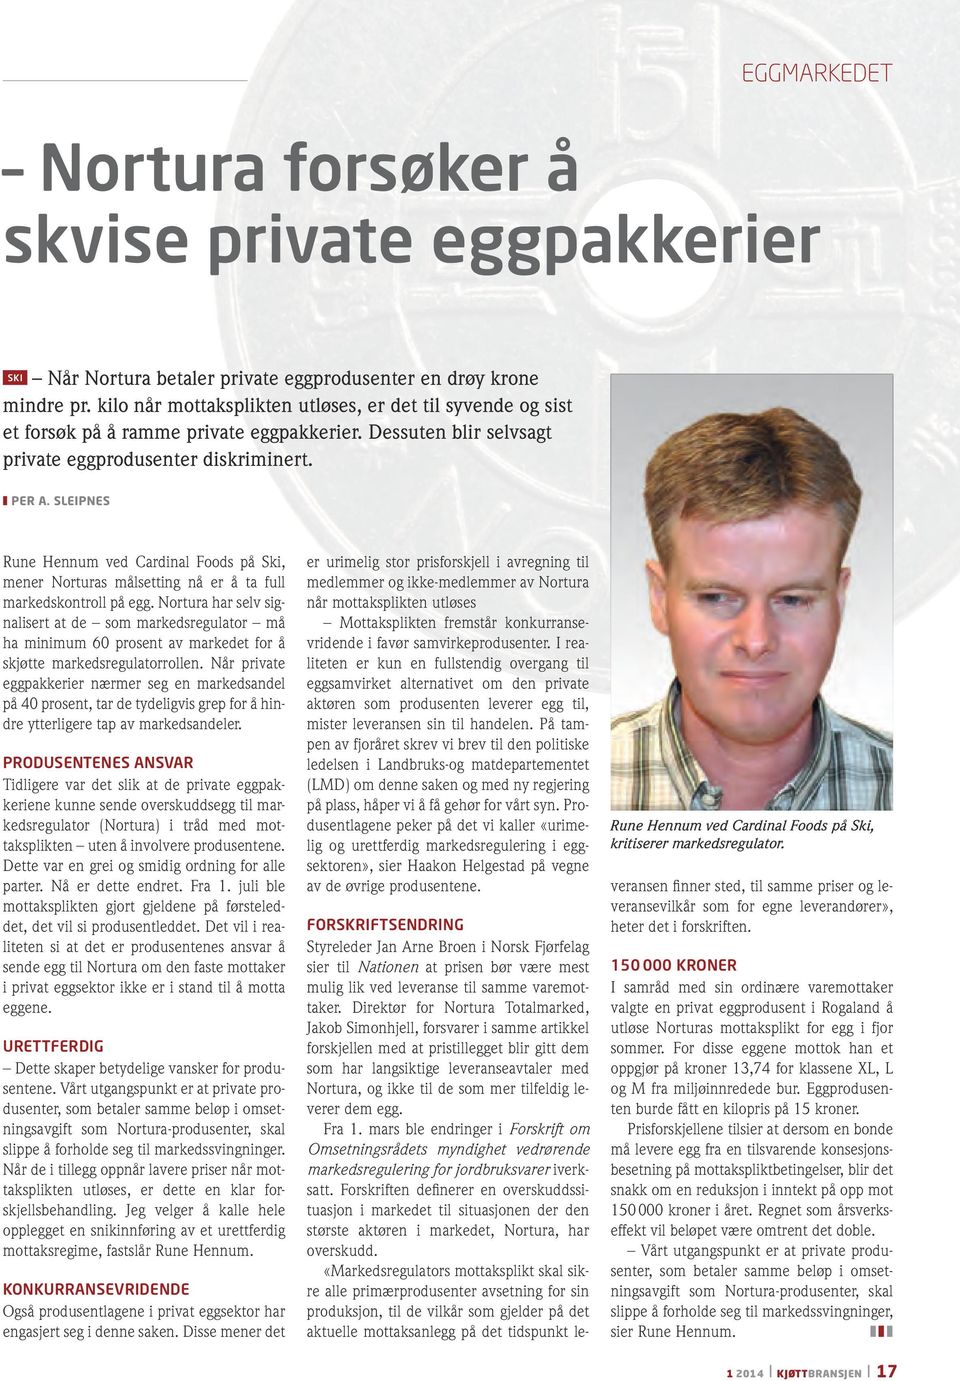 sleipnes Rune Hennum ved Cardinal Foods på Ski, mener Norturas målsetting nå er å ta full markedskontroll på egg.